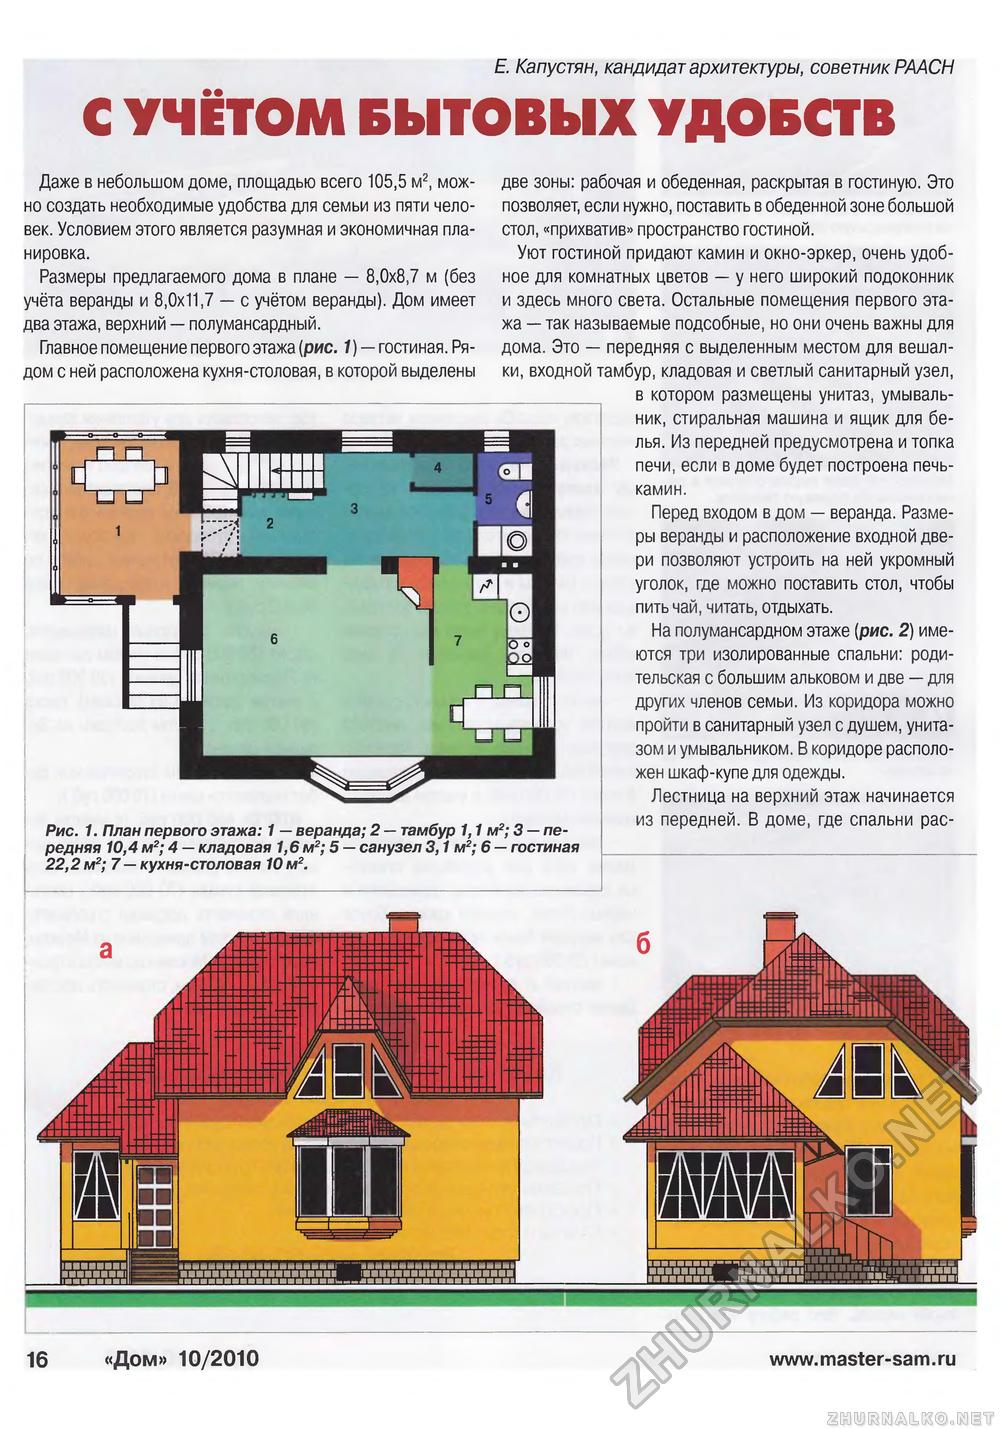 Дом 2010-10, страница 16